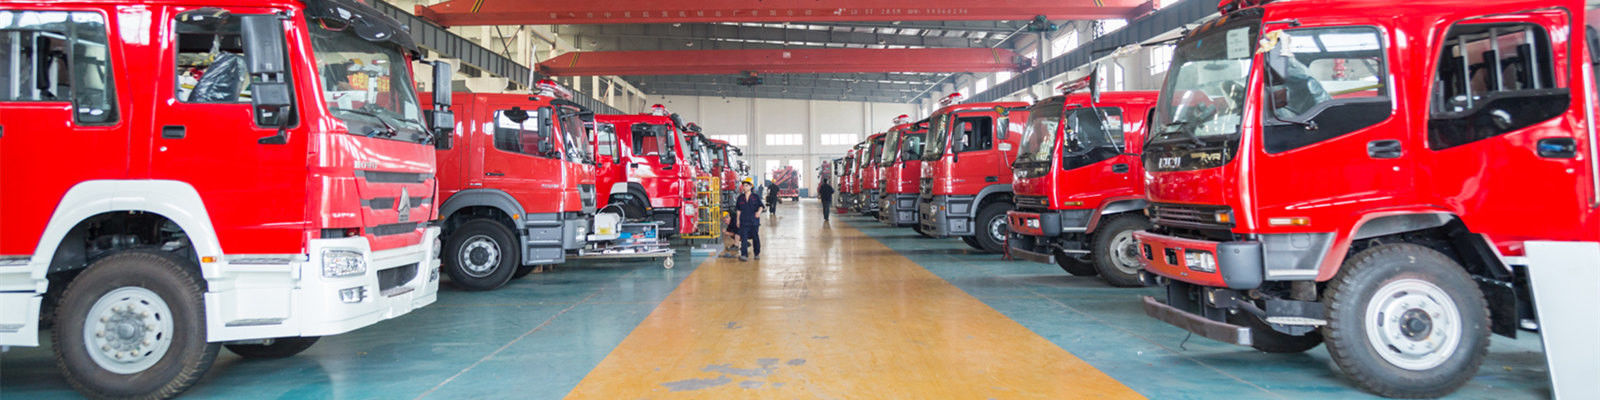 качество Коммерчески пожарные машины фабрика